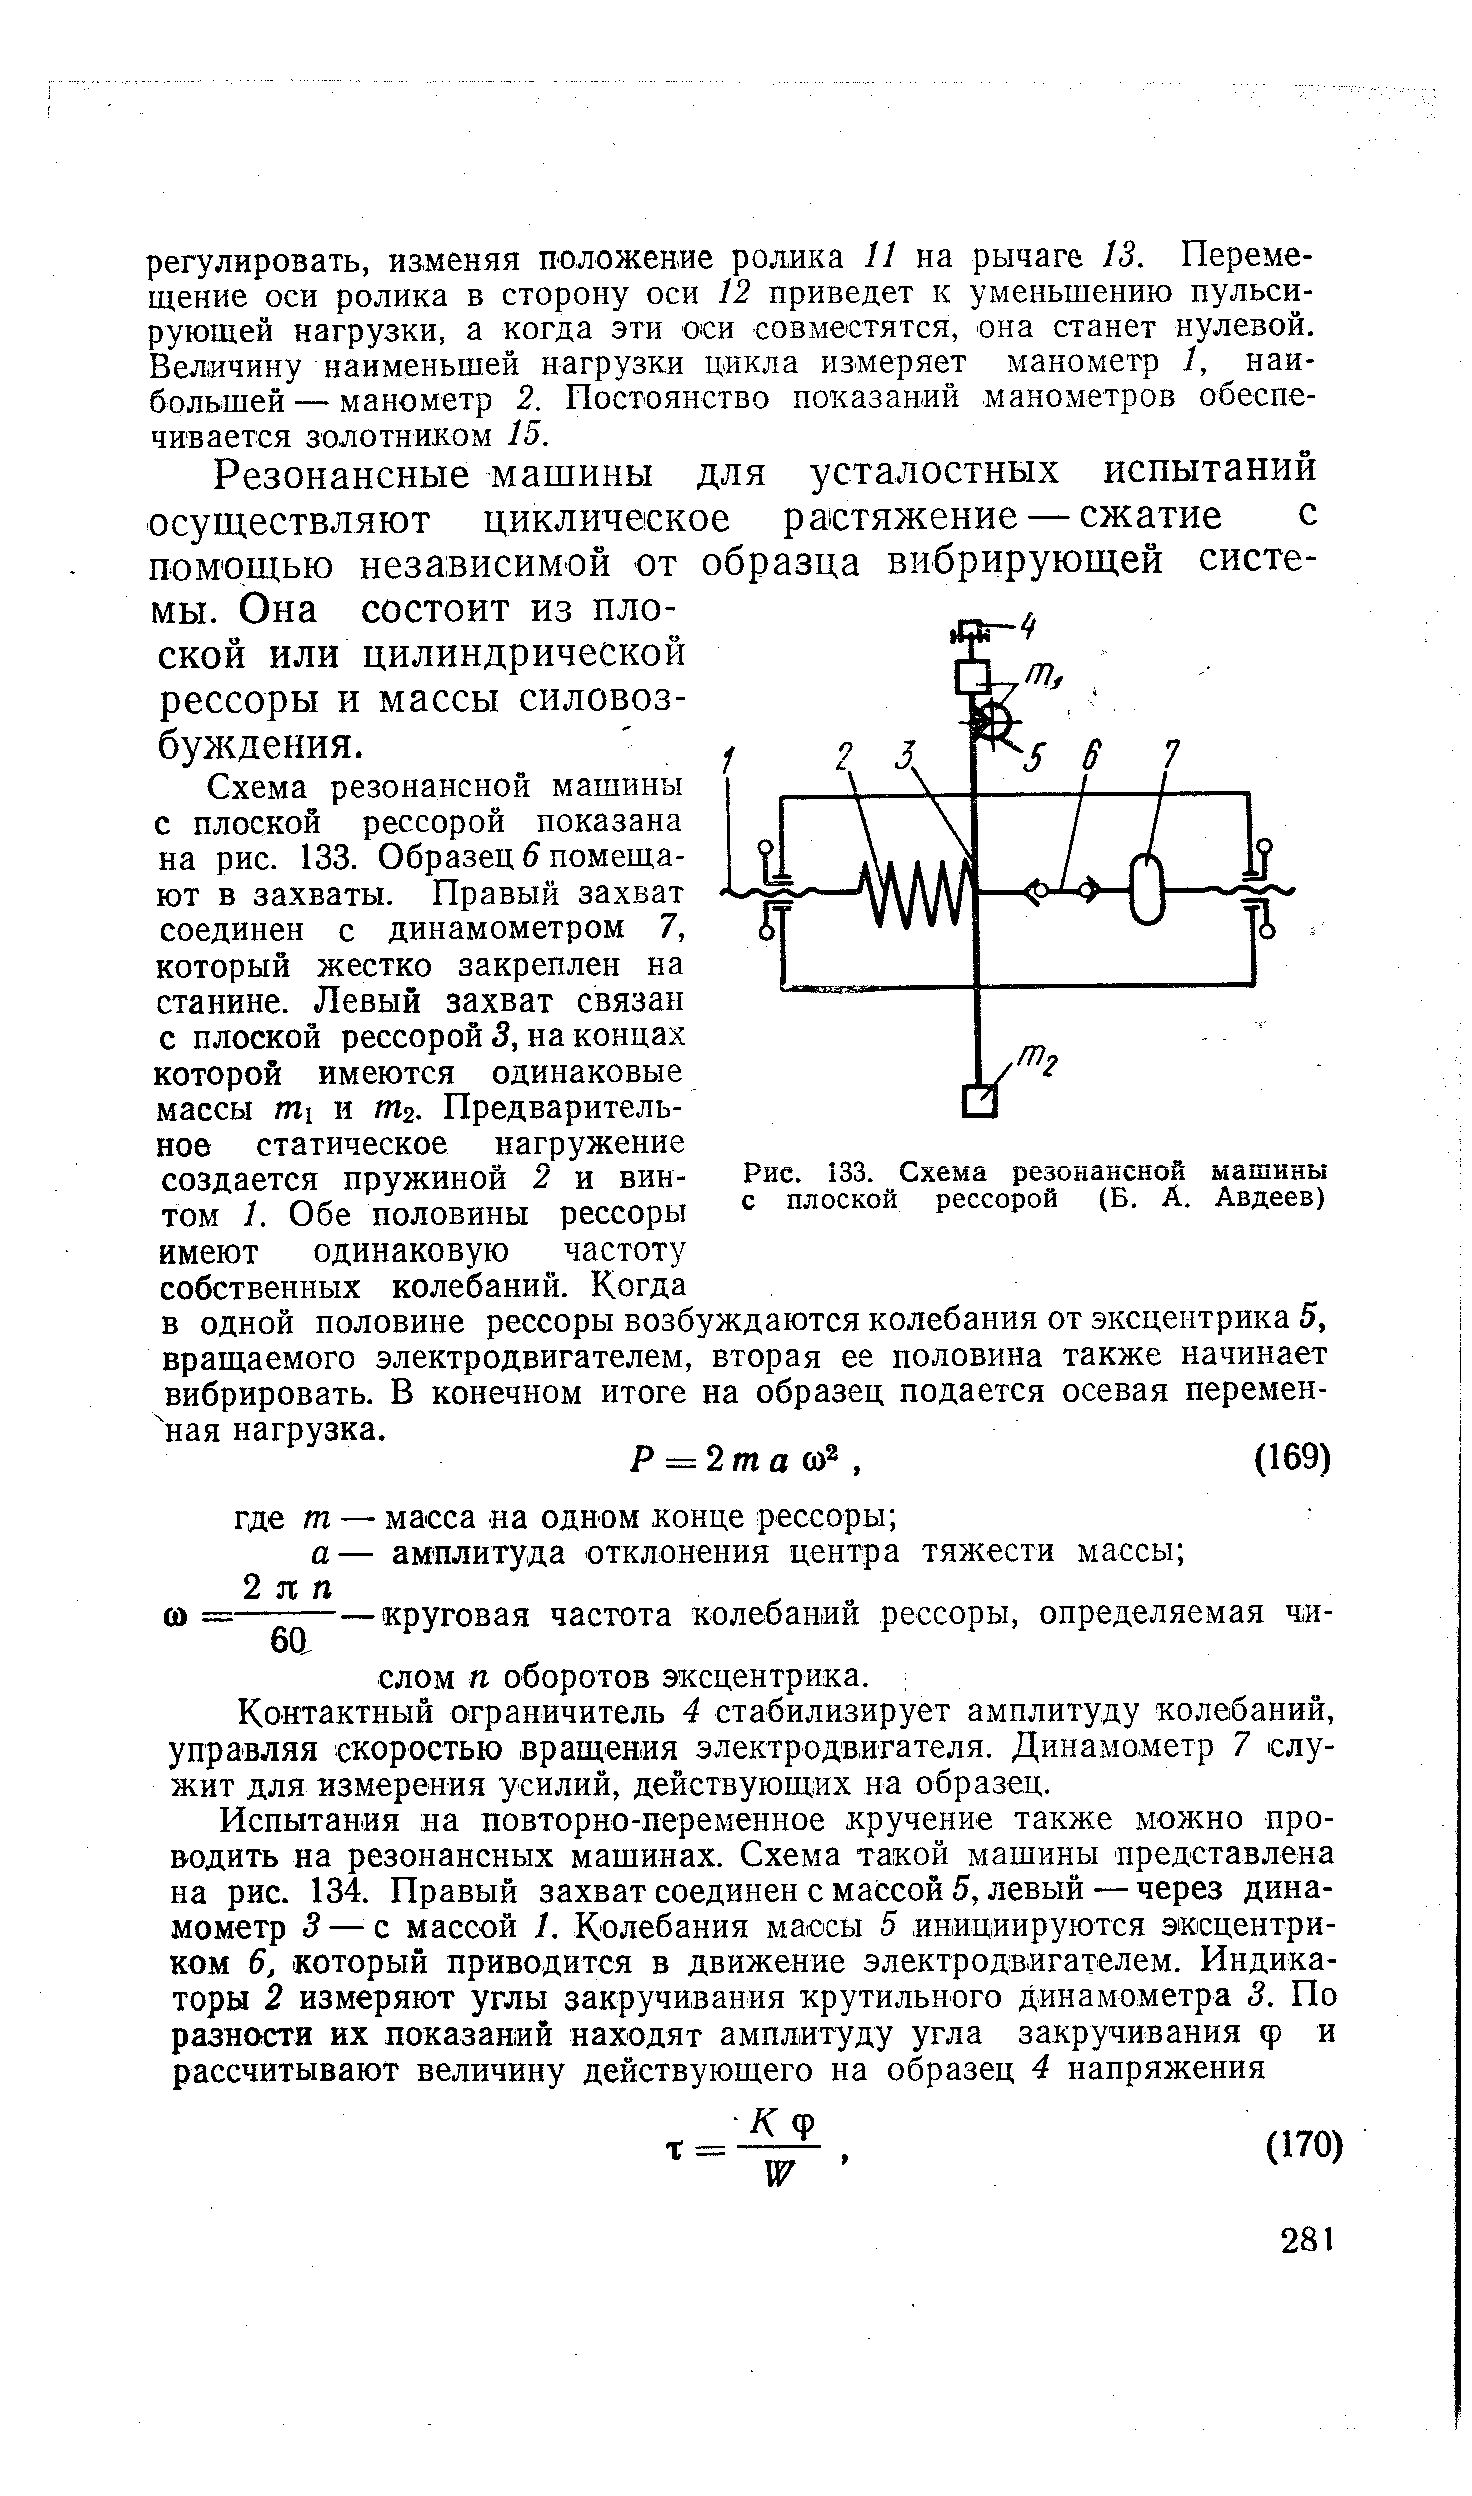 Рис. 133. Схема резонансной машины с плоской рессорой (Б. А. Авдеев)
